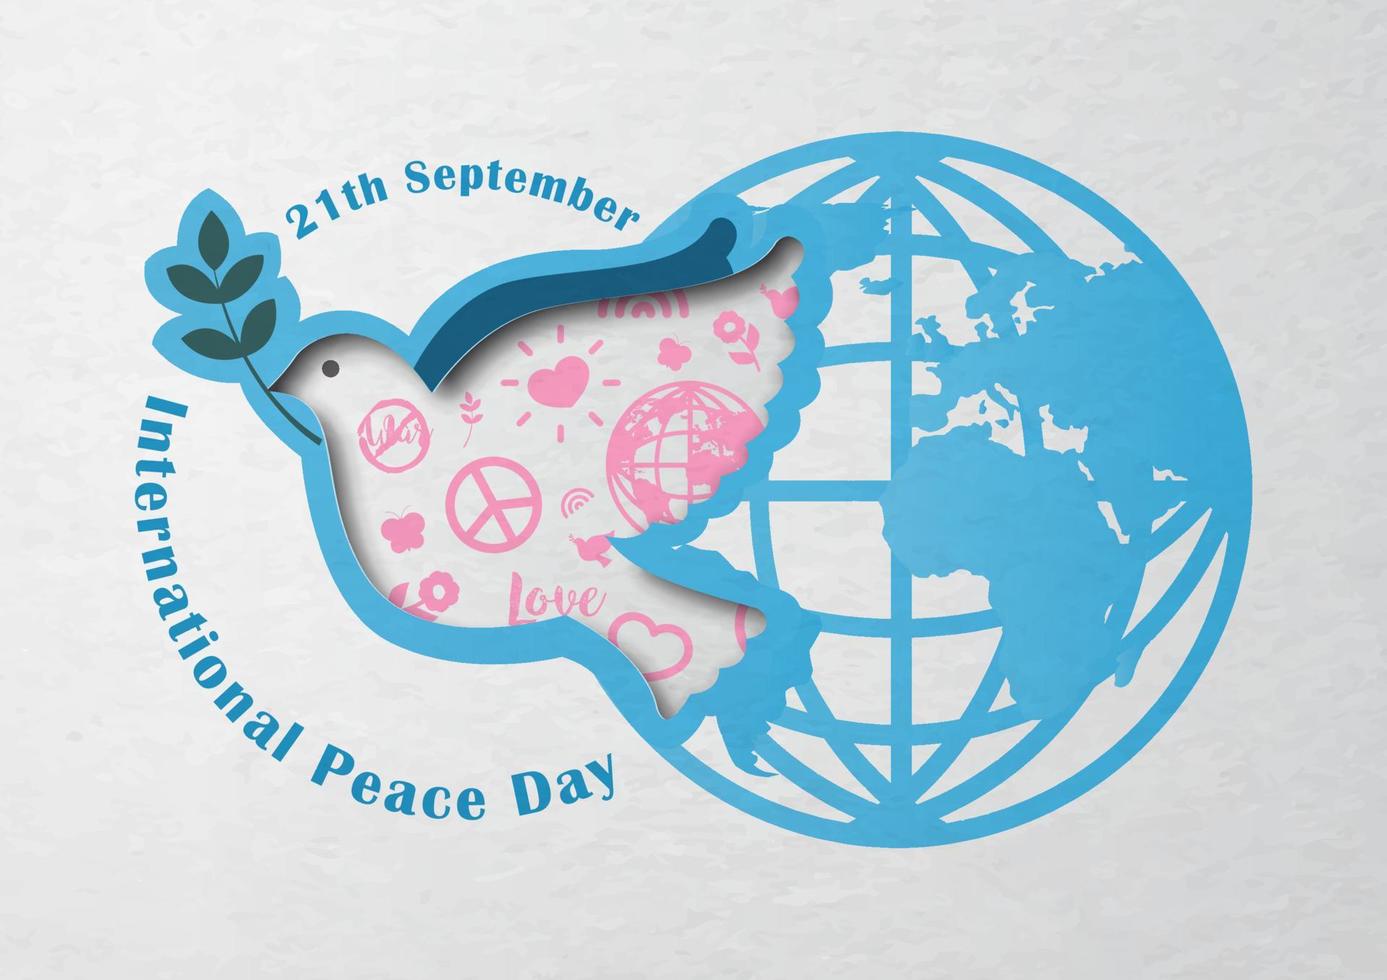 colomba della pace con il segno rosa icona della giornata della pace in stile taglio carta e il giorno, nome dell'evento con sfondo del modello globale su carta bianca. campagna poster per la giornata internazionale della pace in disegno vettoriale. vettore